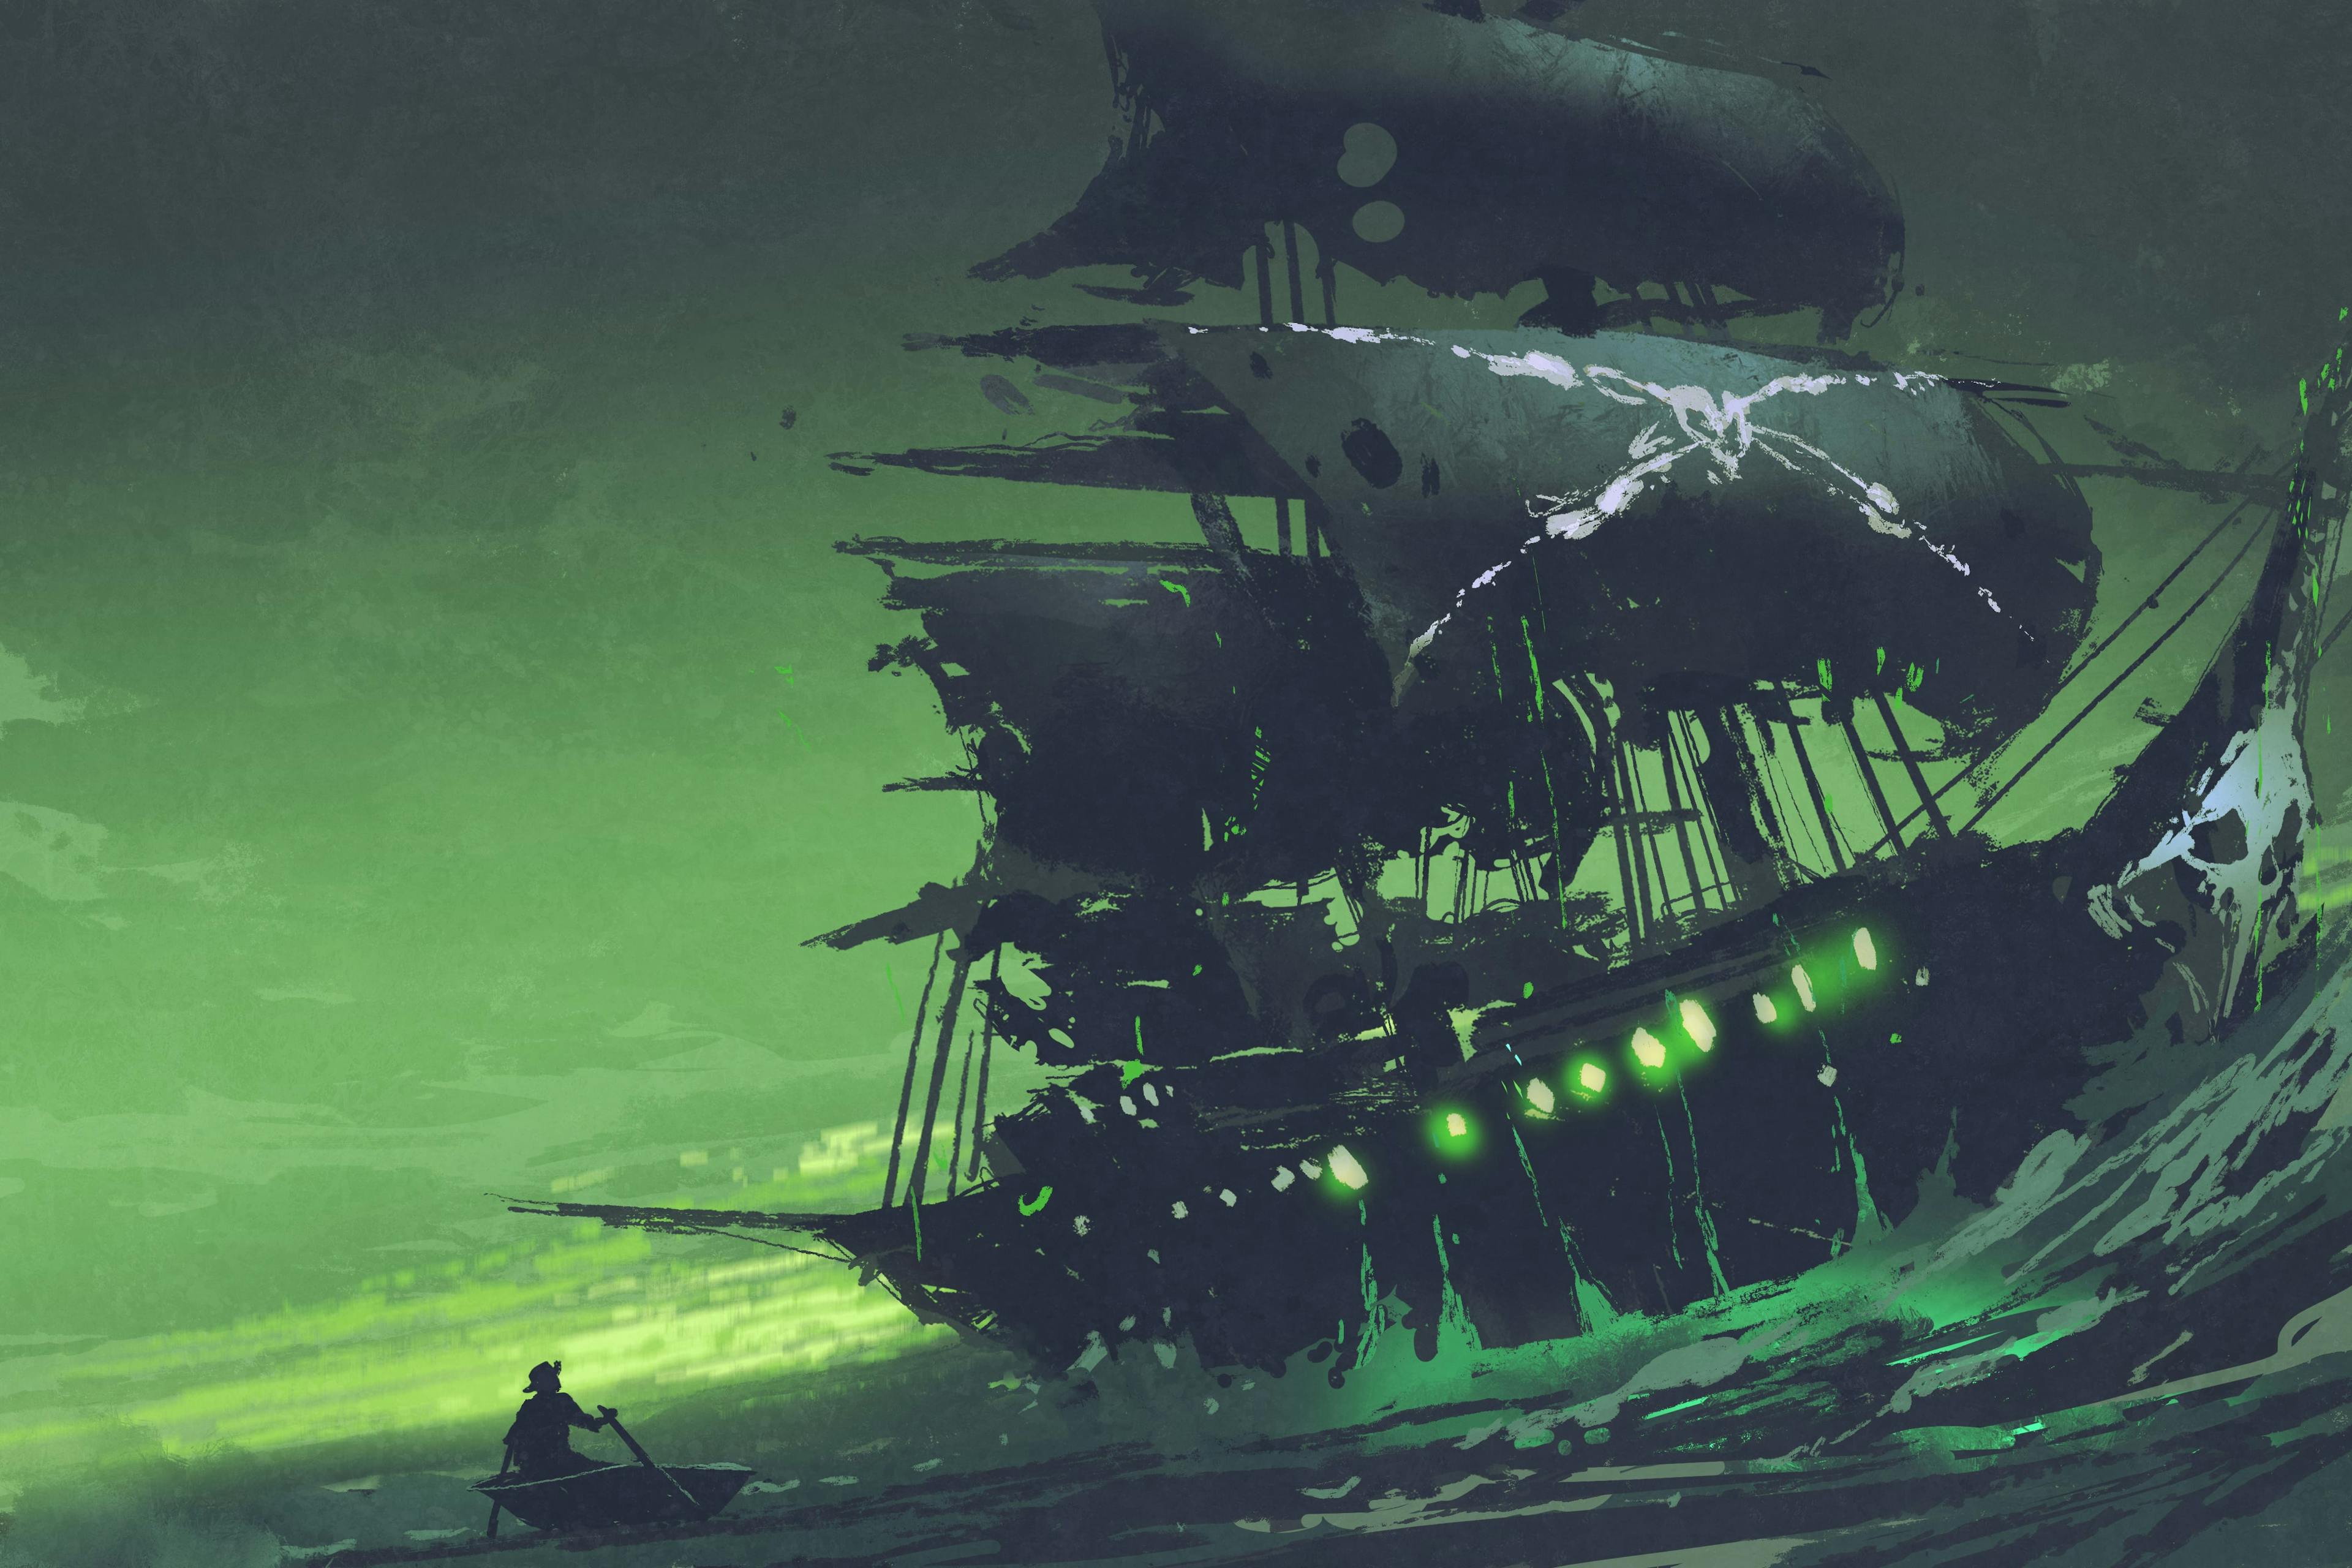 Tall Tales on Black Sails